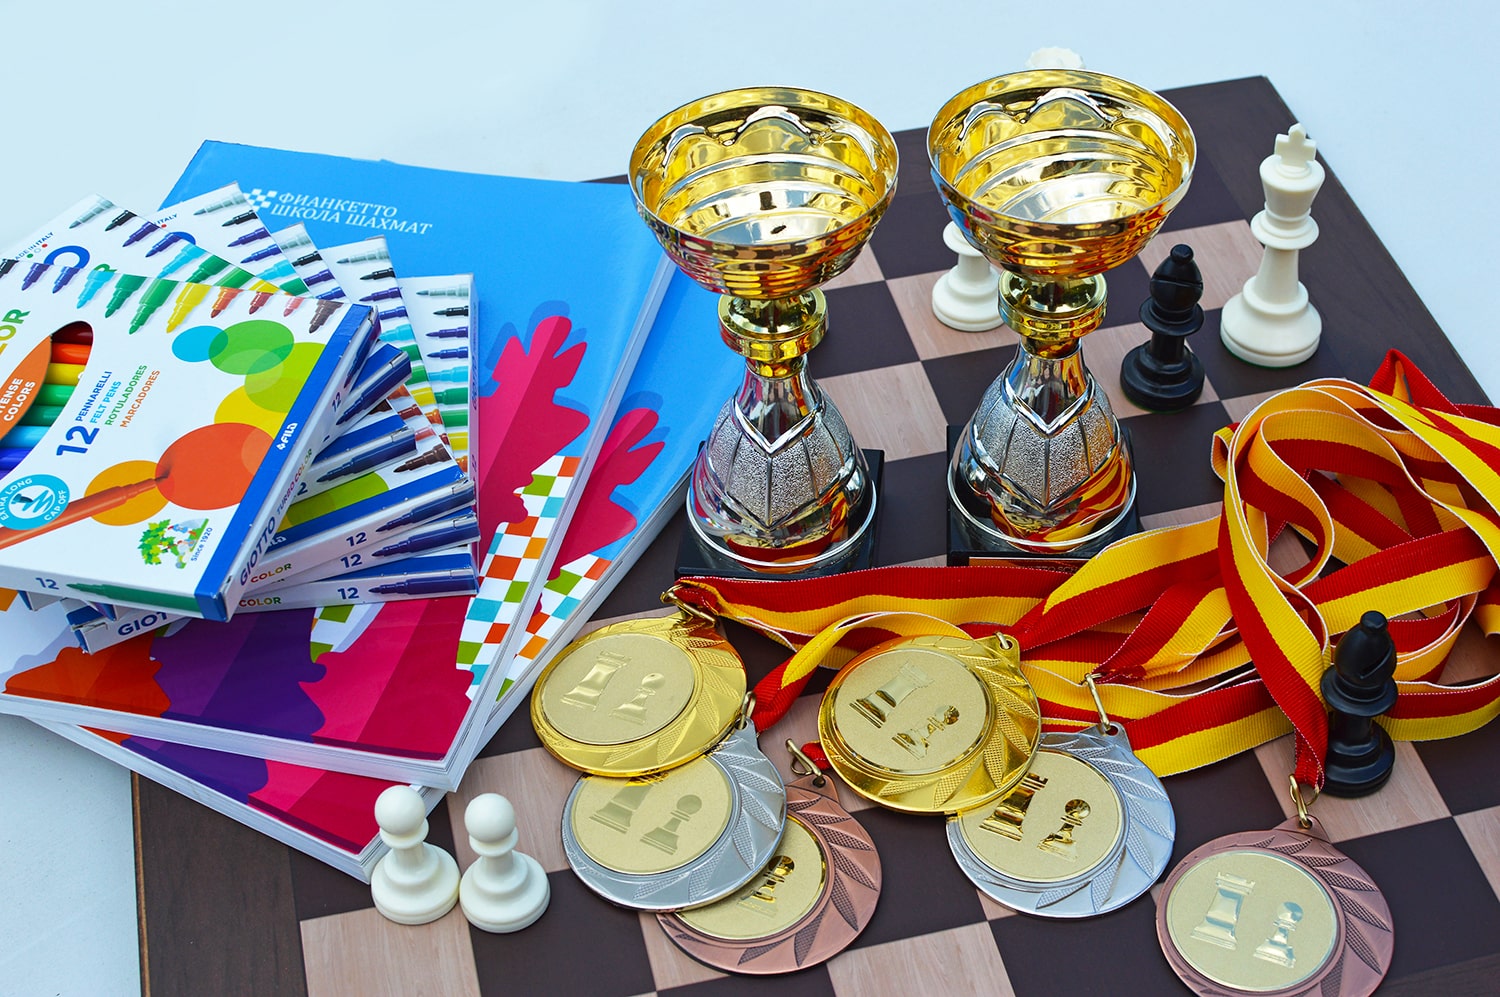 Кубок Фианкетто 2021 - онлайн-турнир по шахматам